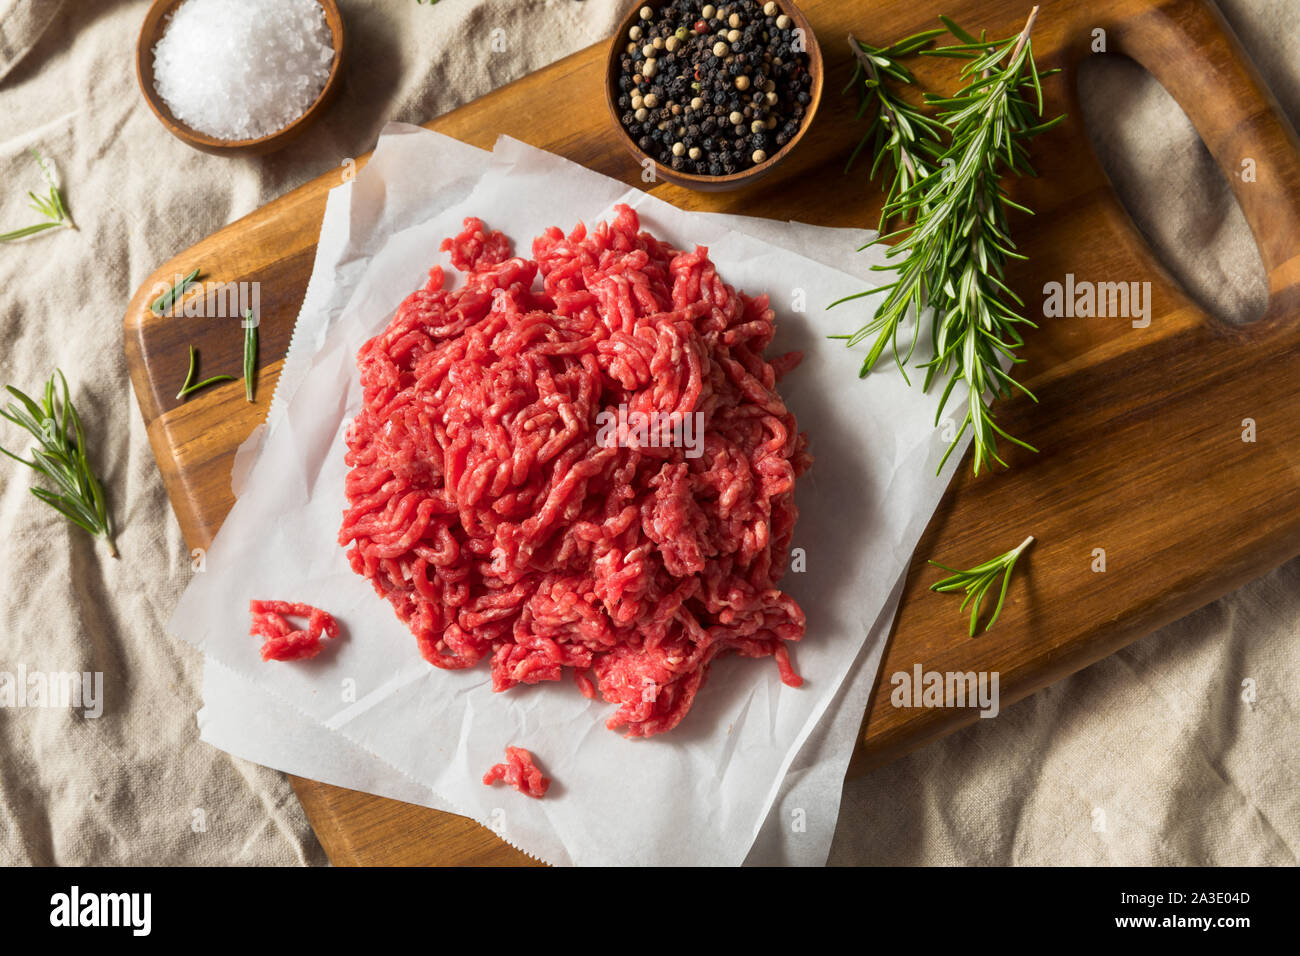 Las materias orgánicas de tierra roja, listo para cocinar la carne picada Foto de stock